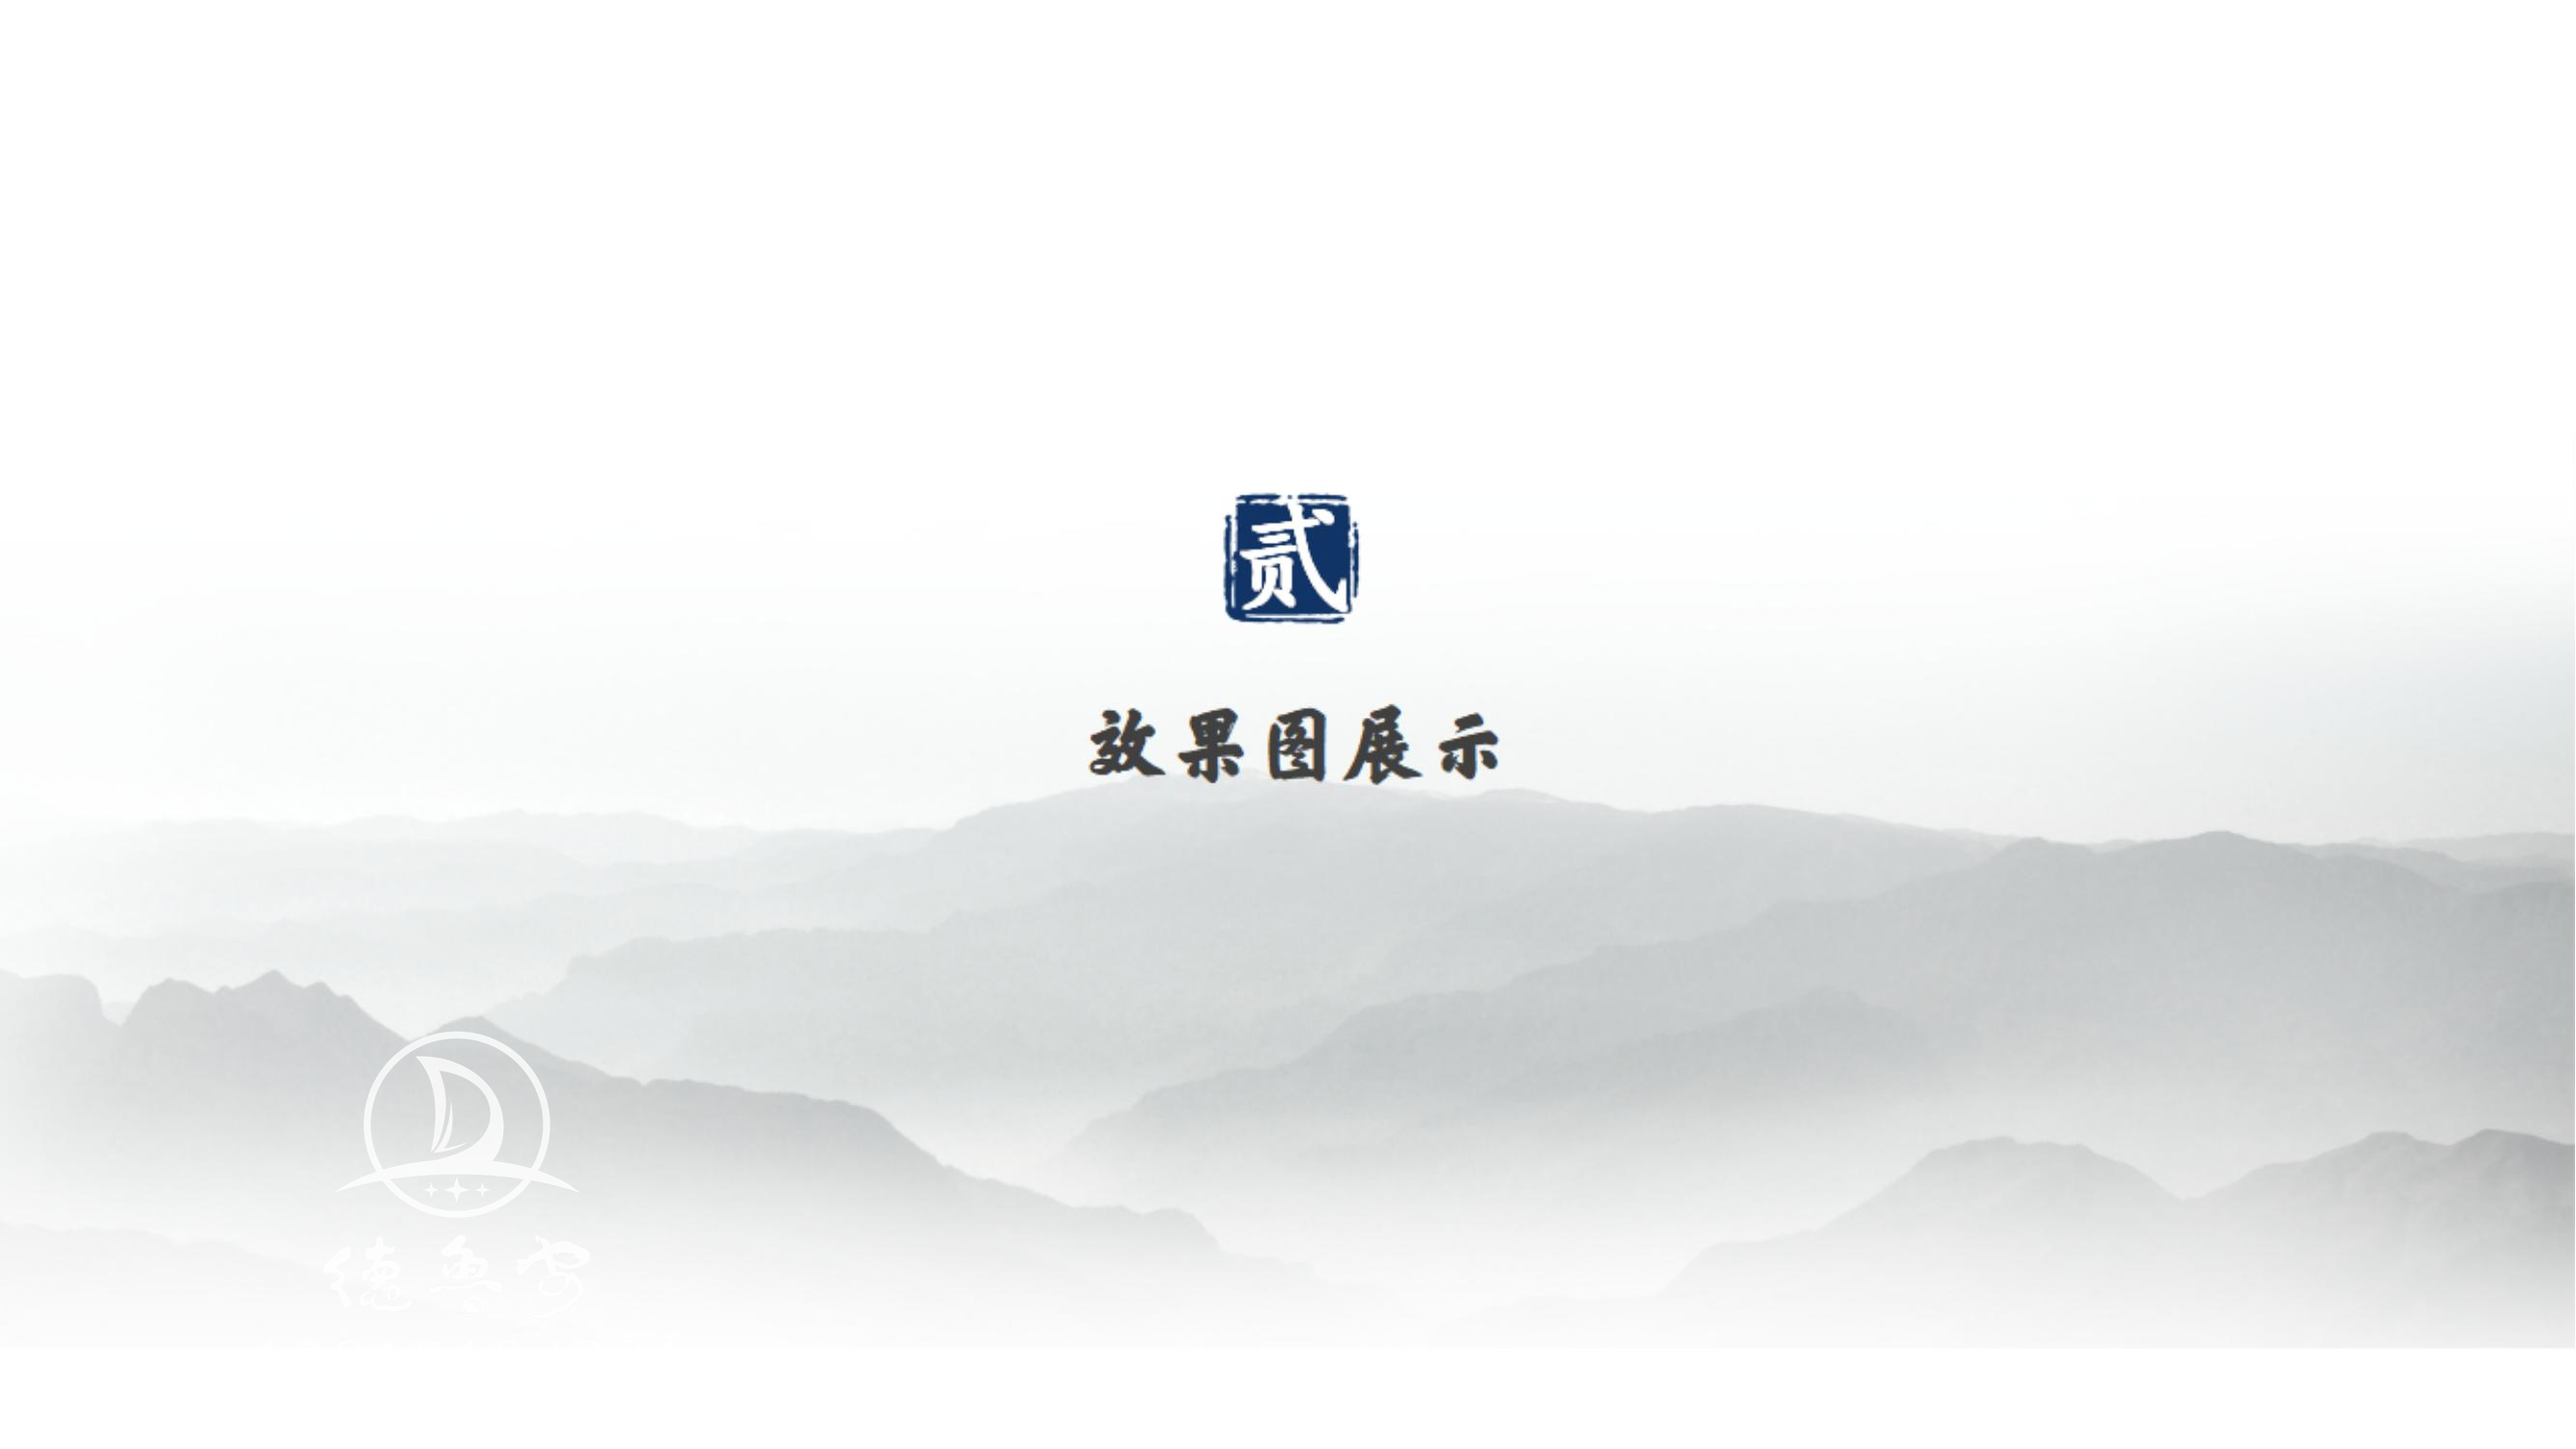 万寿宫logo定稿方案_04.jpg